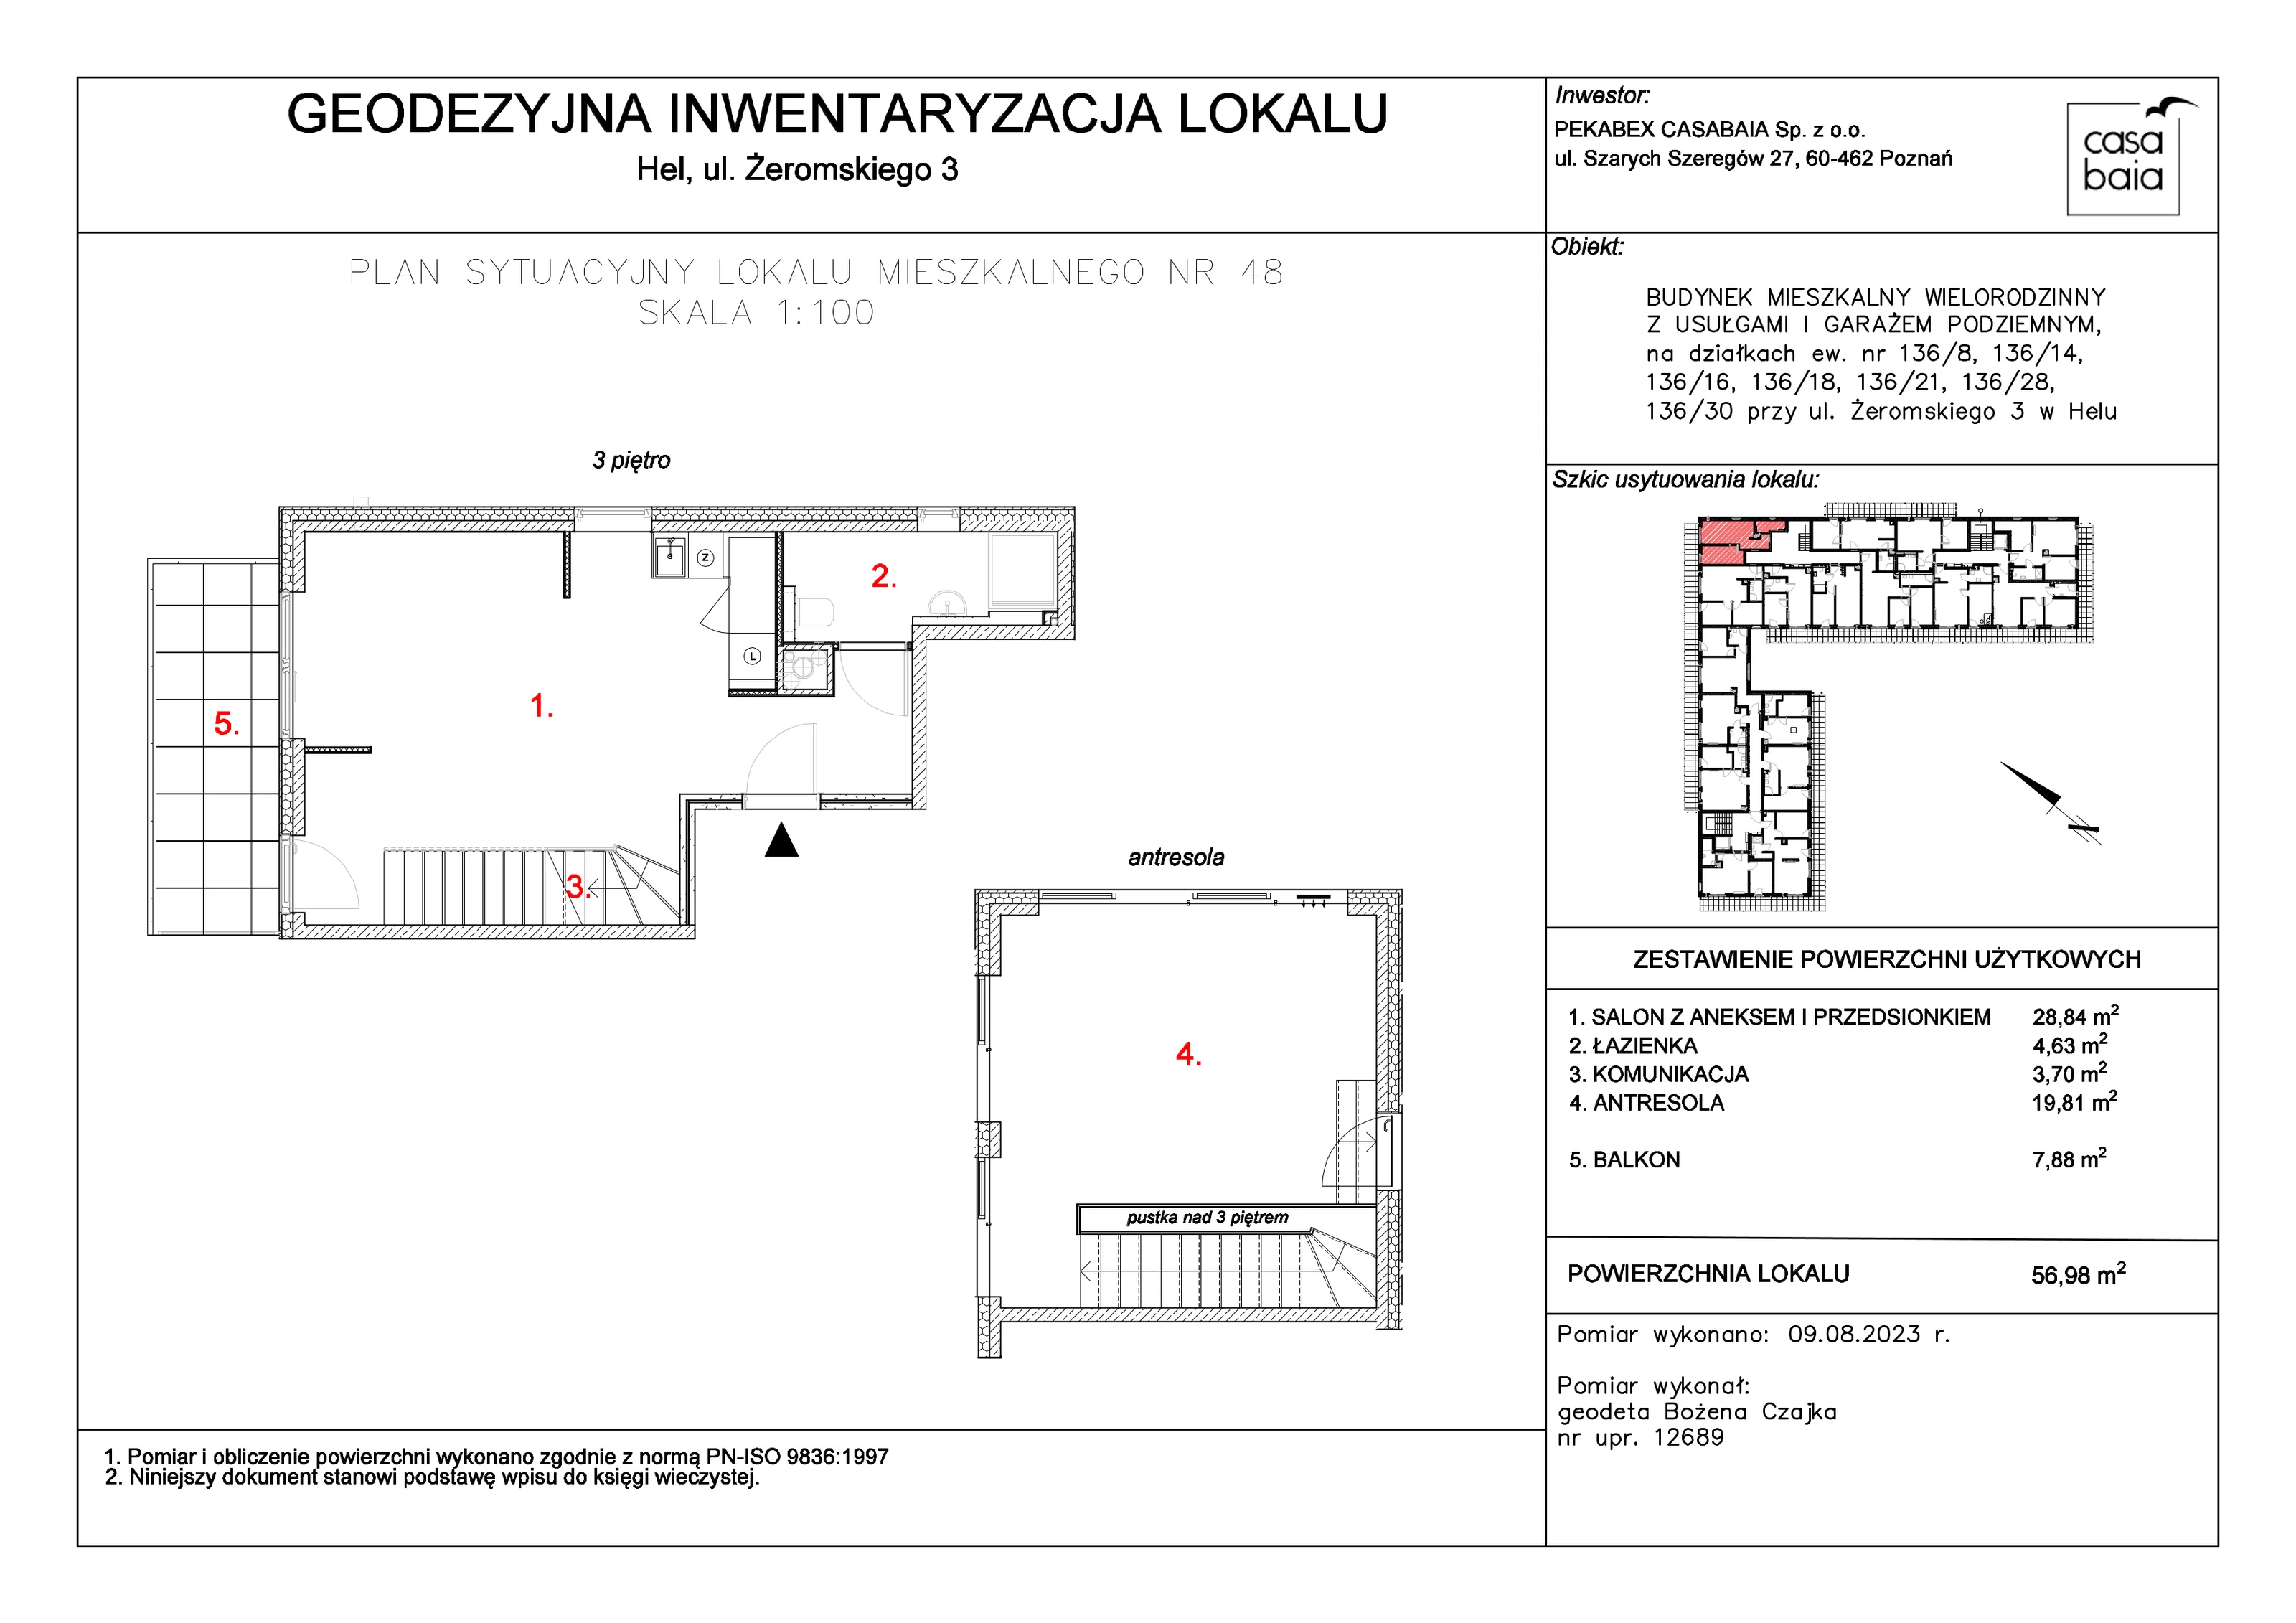 Mieszkanie 56,98 m², piętro 3, oferta nr J4, CASA BAIA, Hel, ul. Stefana Żeromskiego 3